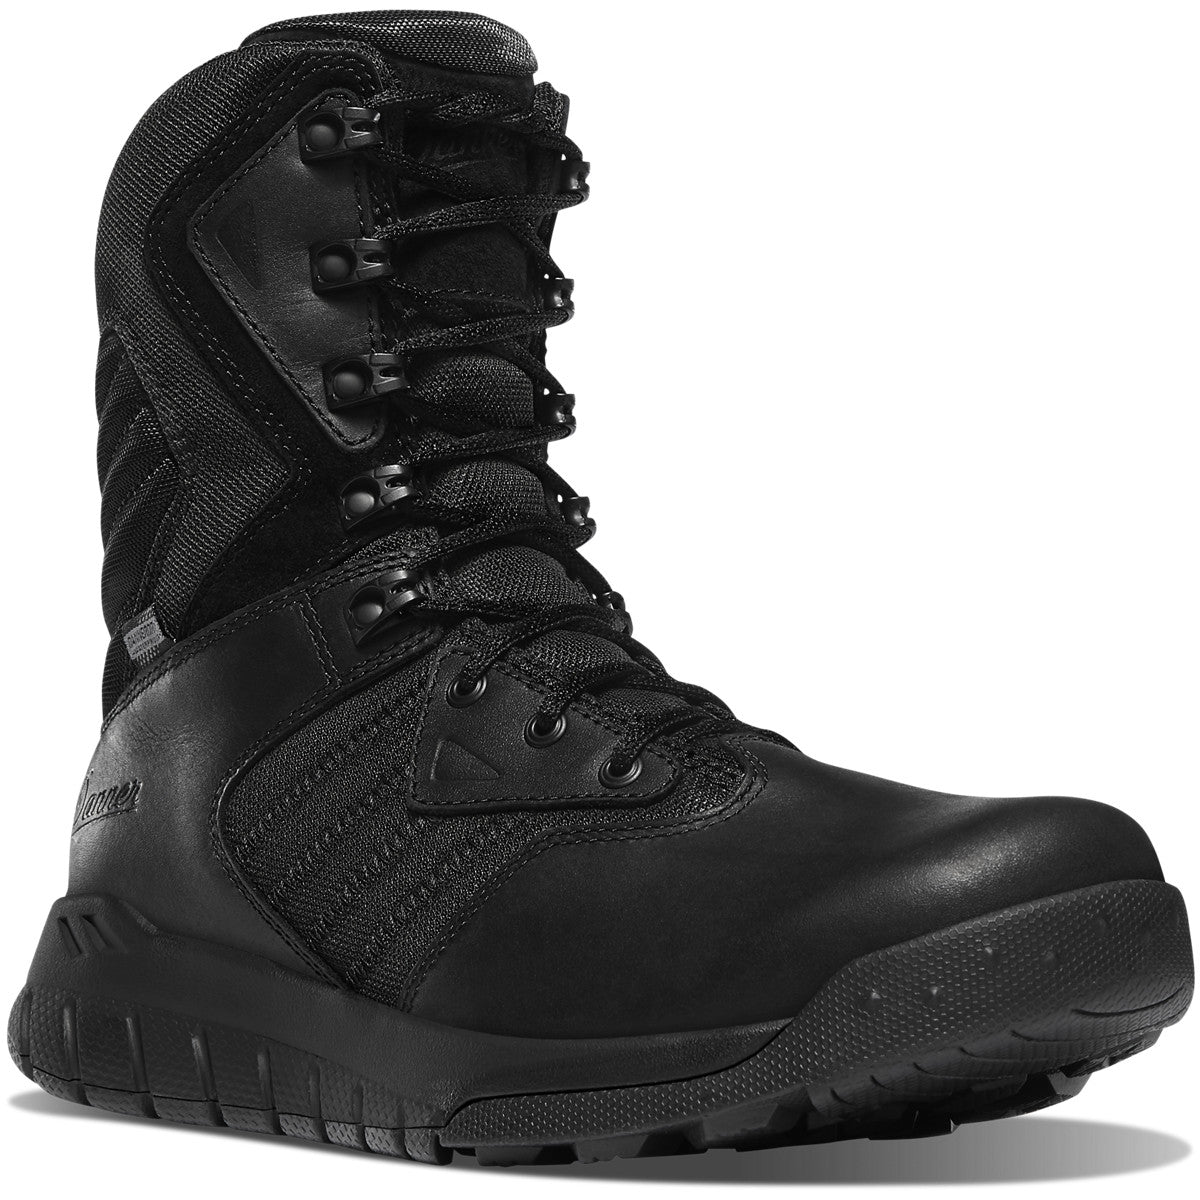 Danner Men's Instinct tactical 8" WP Side Zip Ins Work Boot- Black - 25331 7 / Medium / Black - Overlook Boots